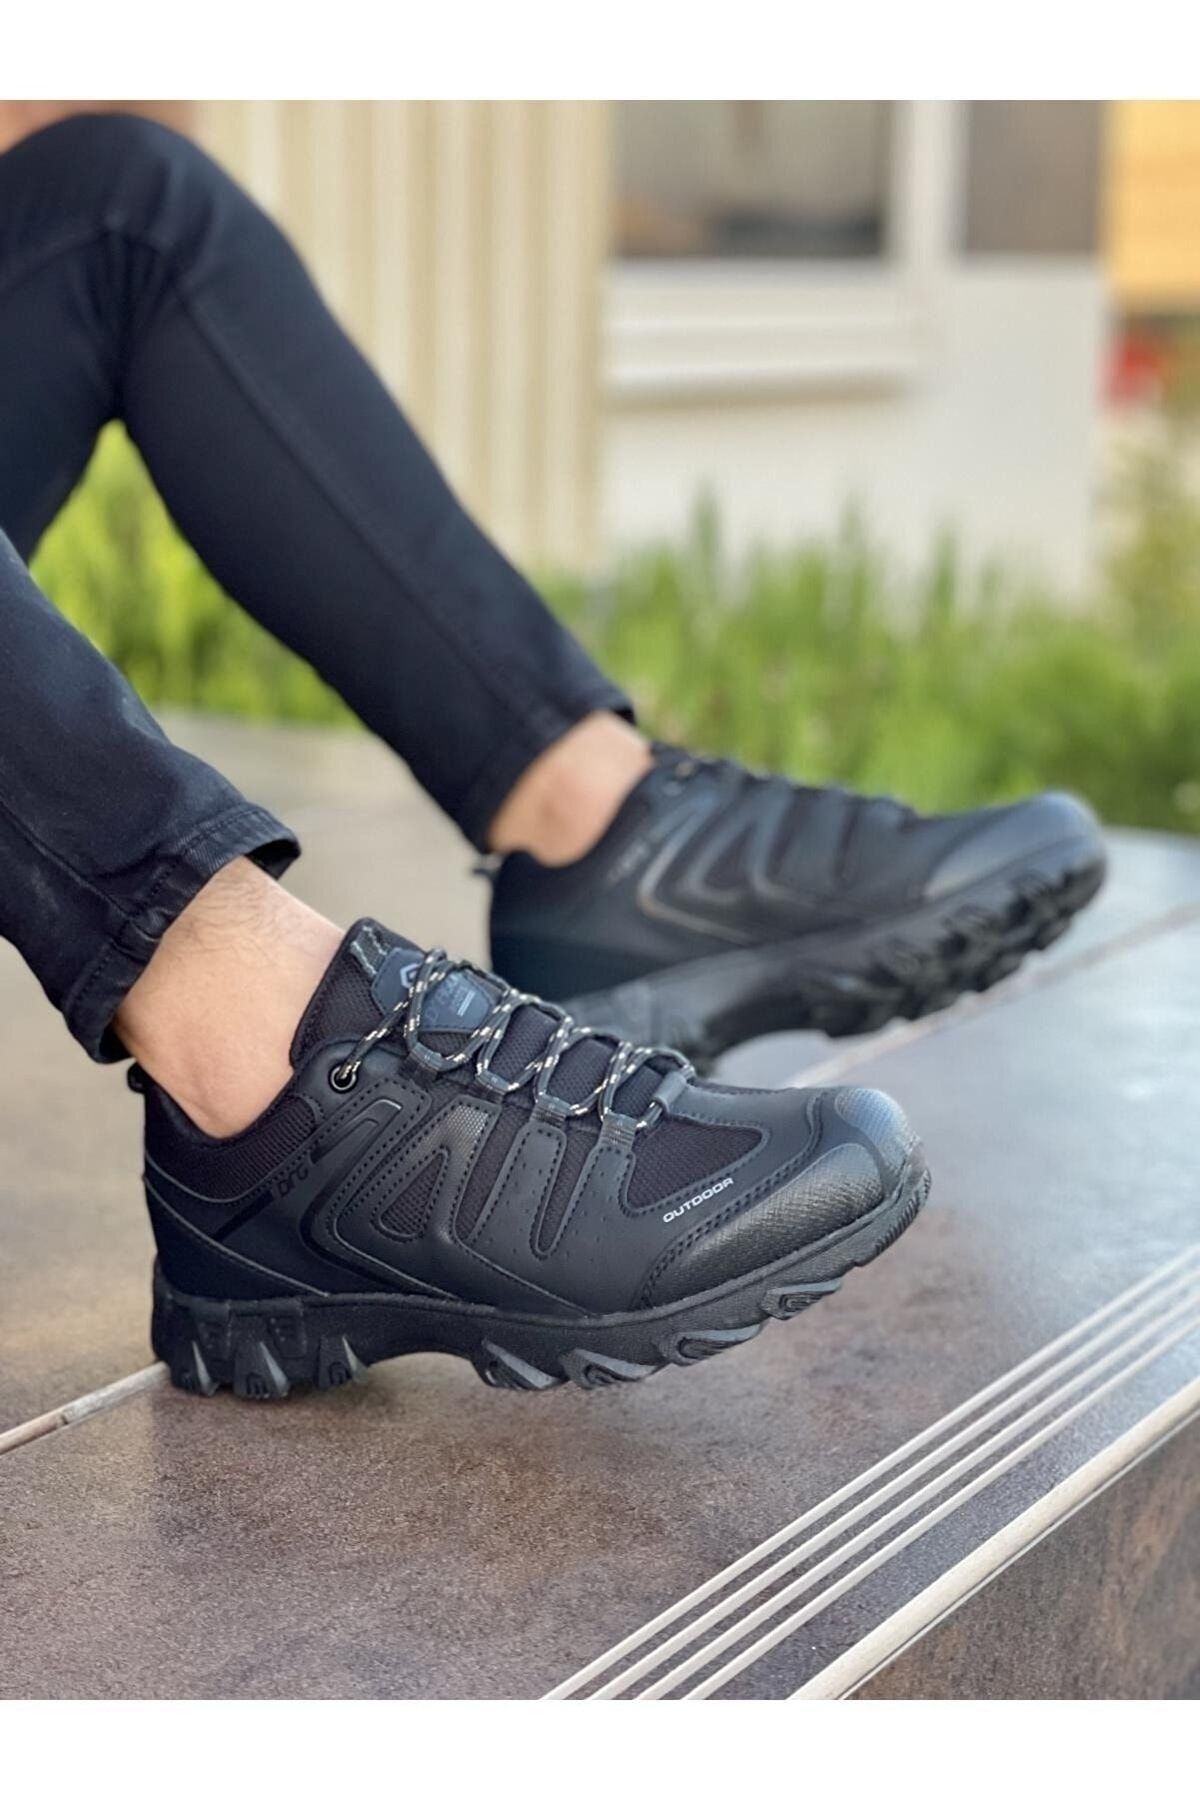 FLY STEP Soğuğa Dayanıklı Kışlık Trekking Ayakkabı Sneaker Kısa Bot Siyah